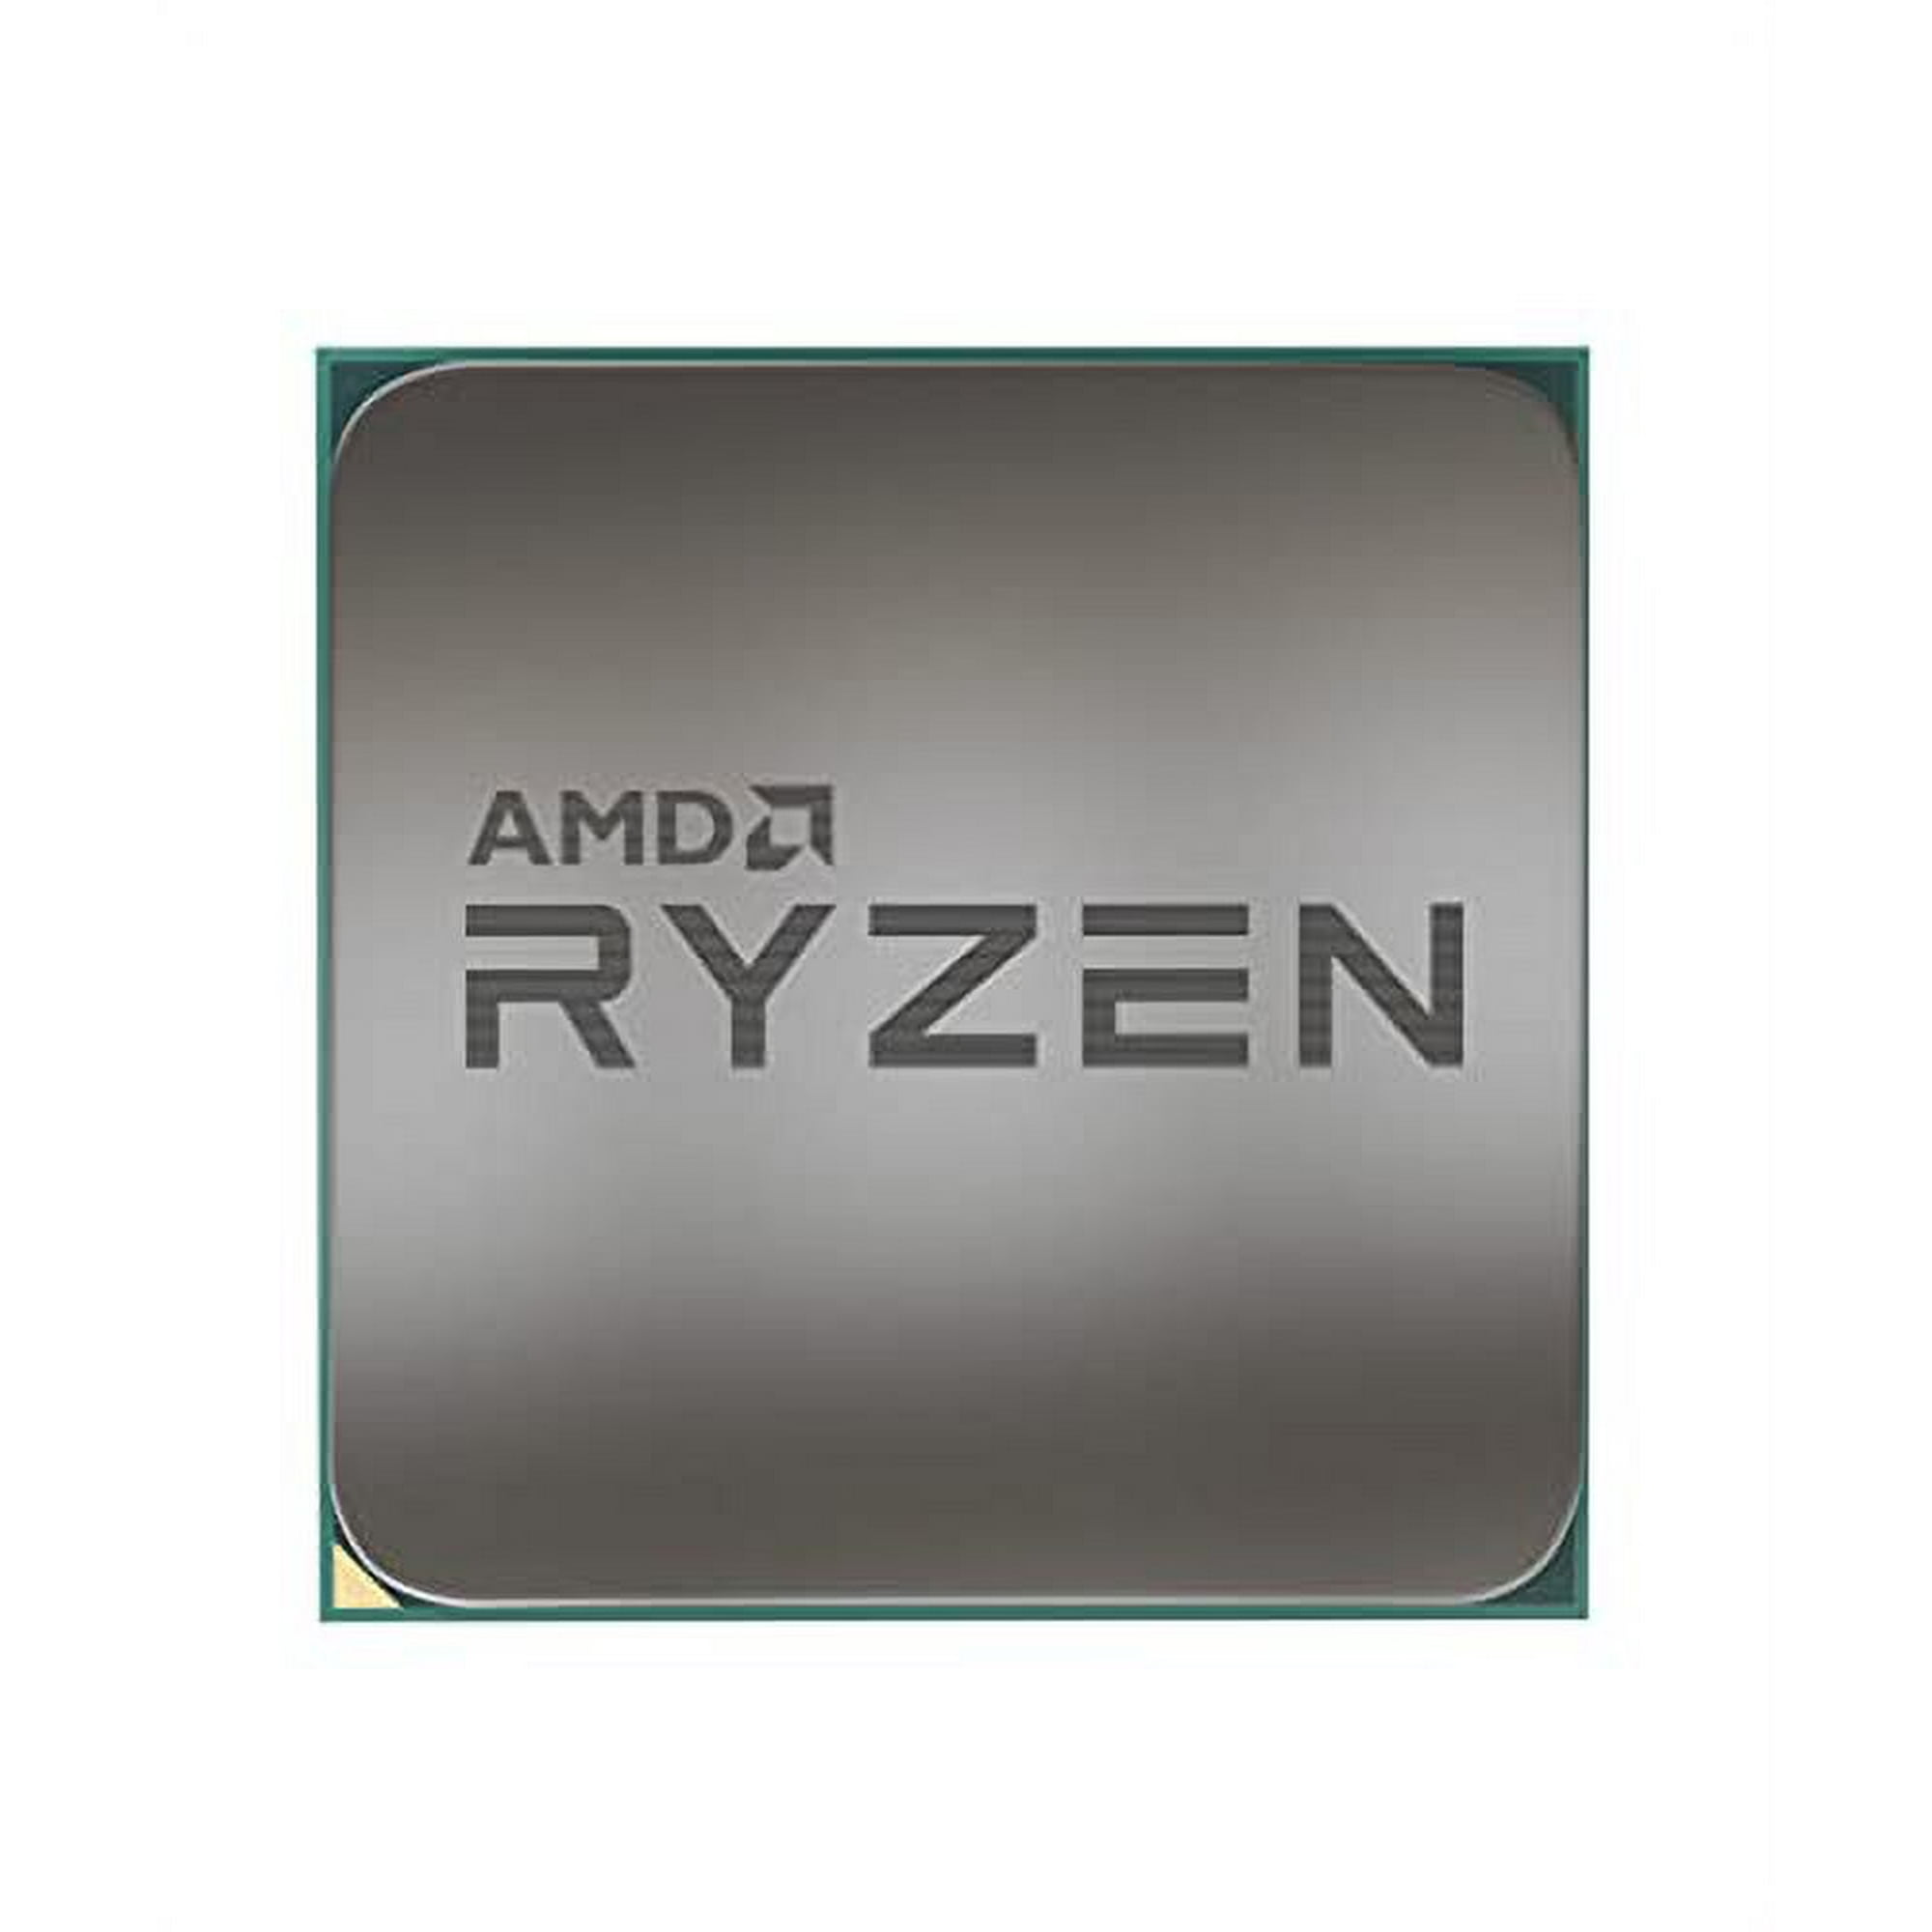 AMD Ryzen 9 5900X 12-core, 24-thread unlocked desktop processor